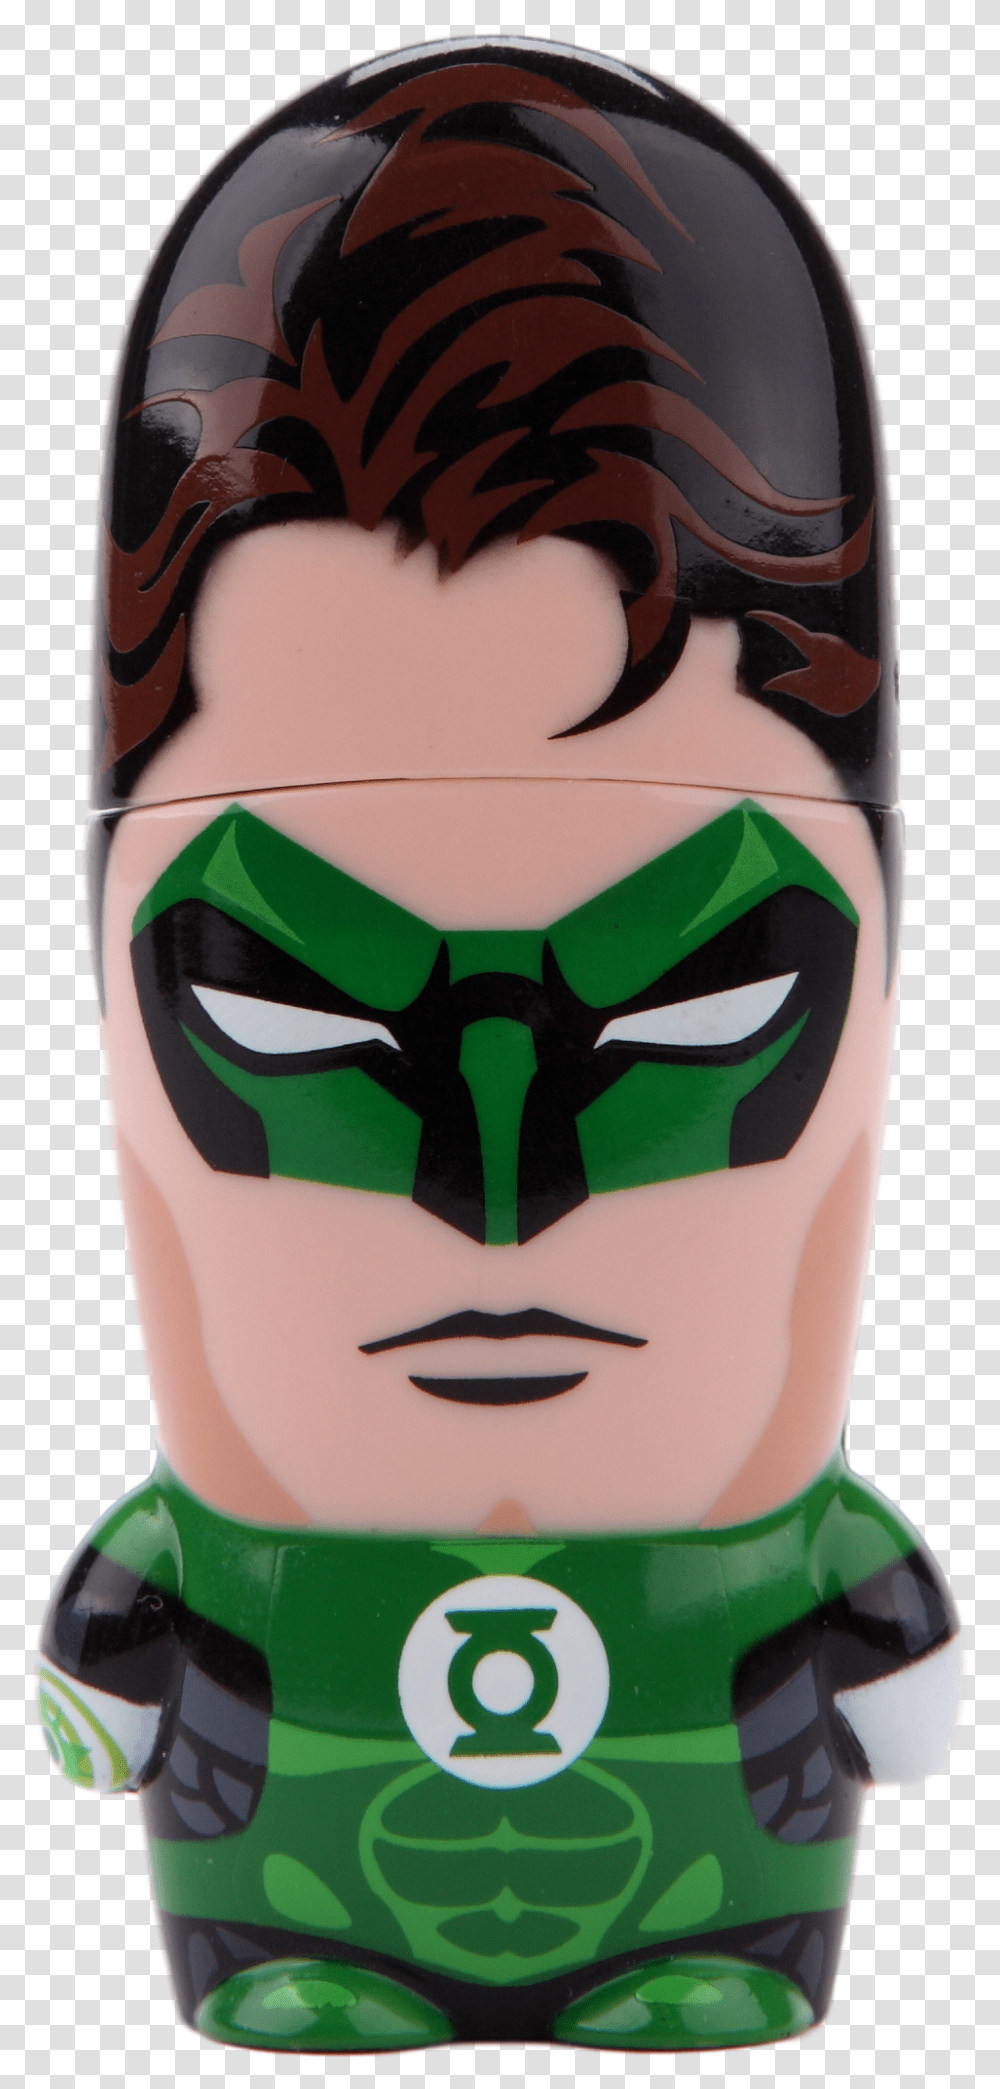 Download Hal Jordan Green Lantern Green Lantern, Emblem, Symbol, Pillar, Architecture Transparent Png